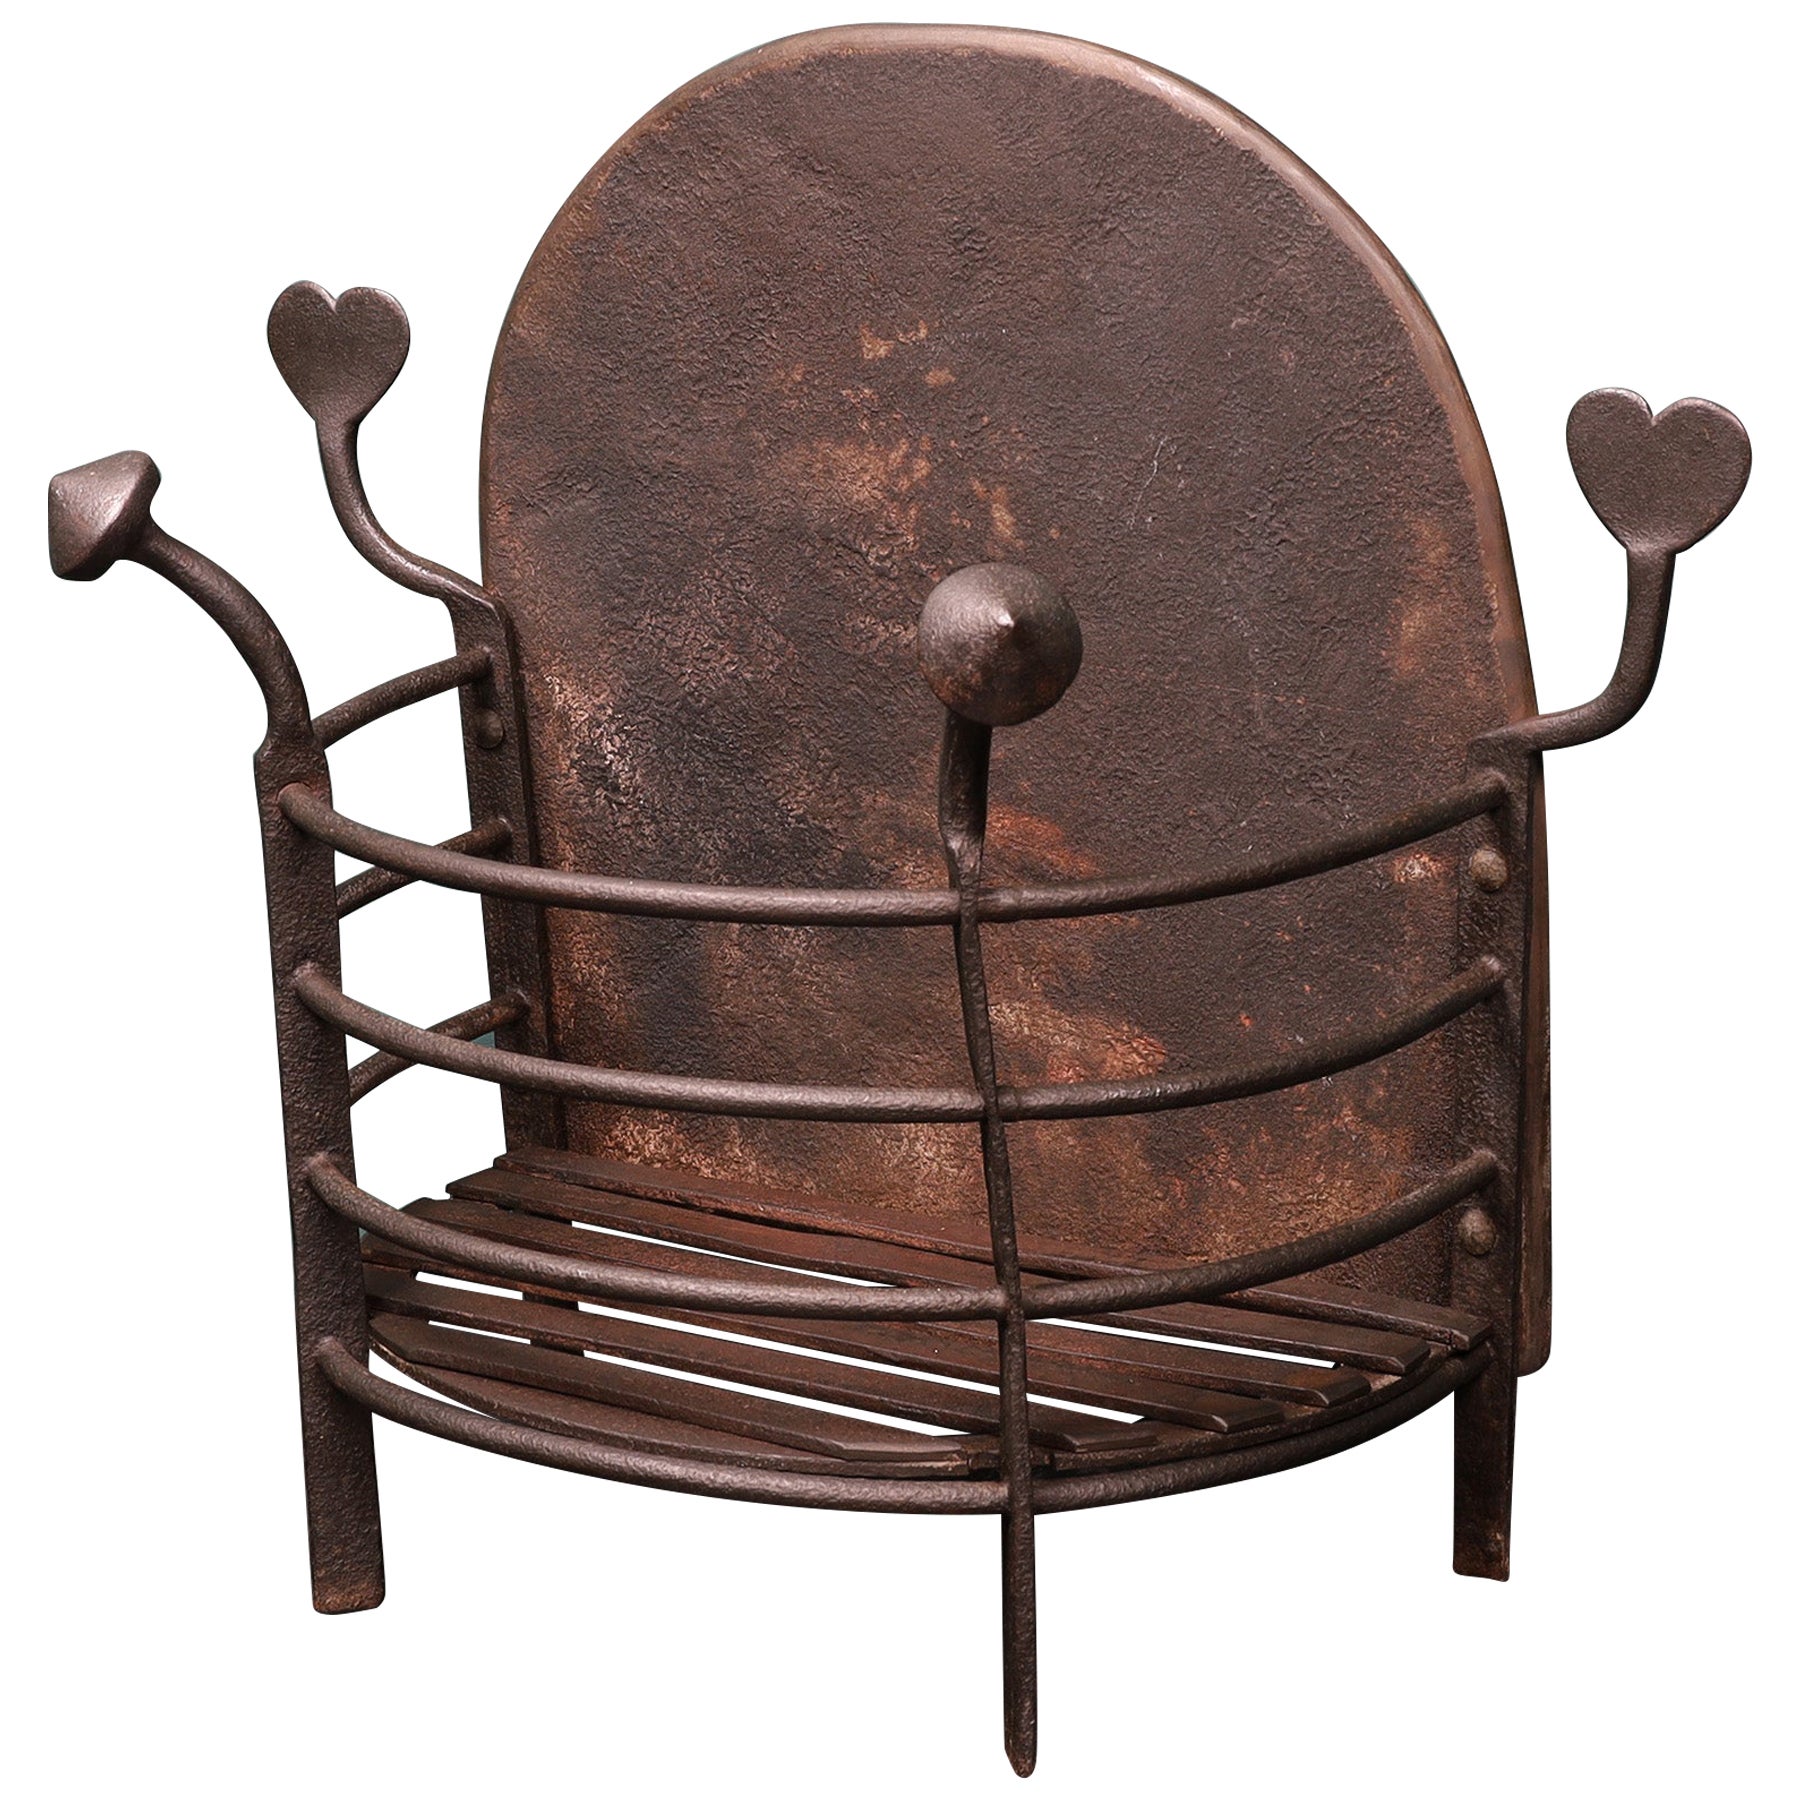 Panier de cheminée semi-circulaire Arts & Crafts avec fleurons en forme de cœur